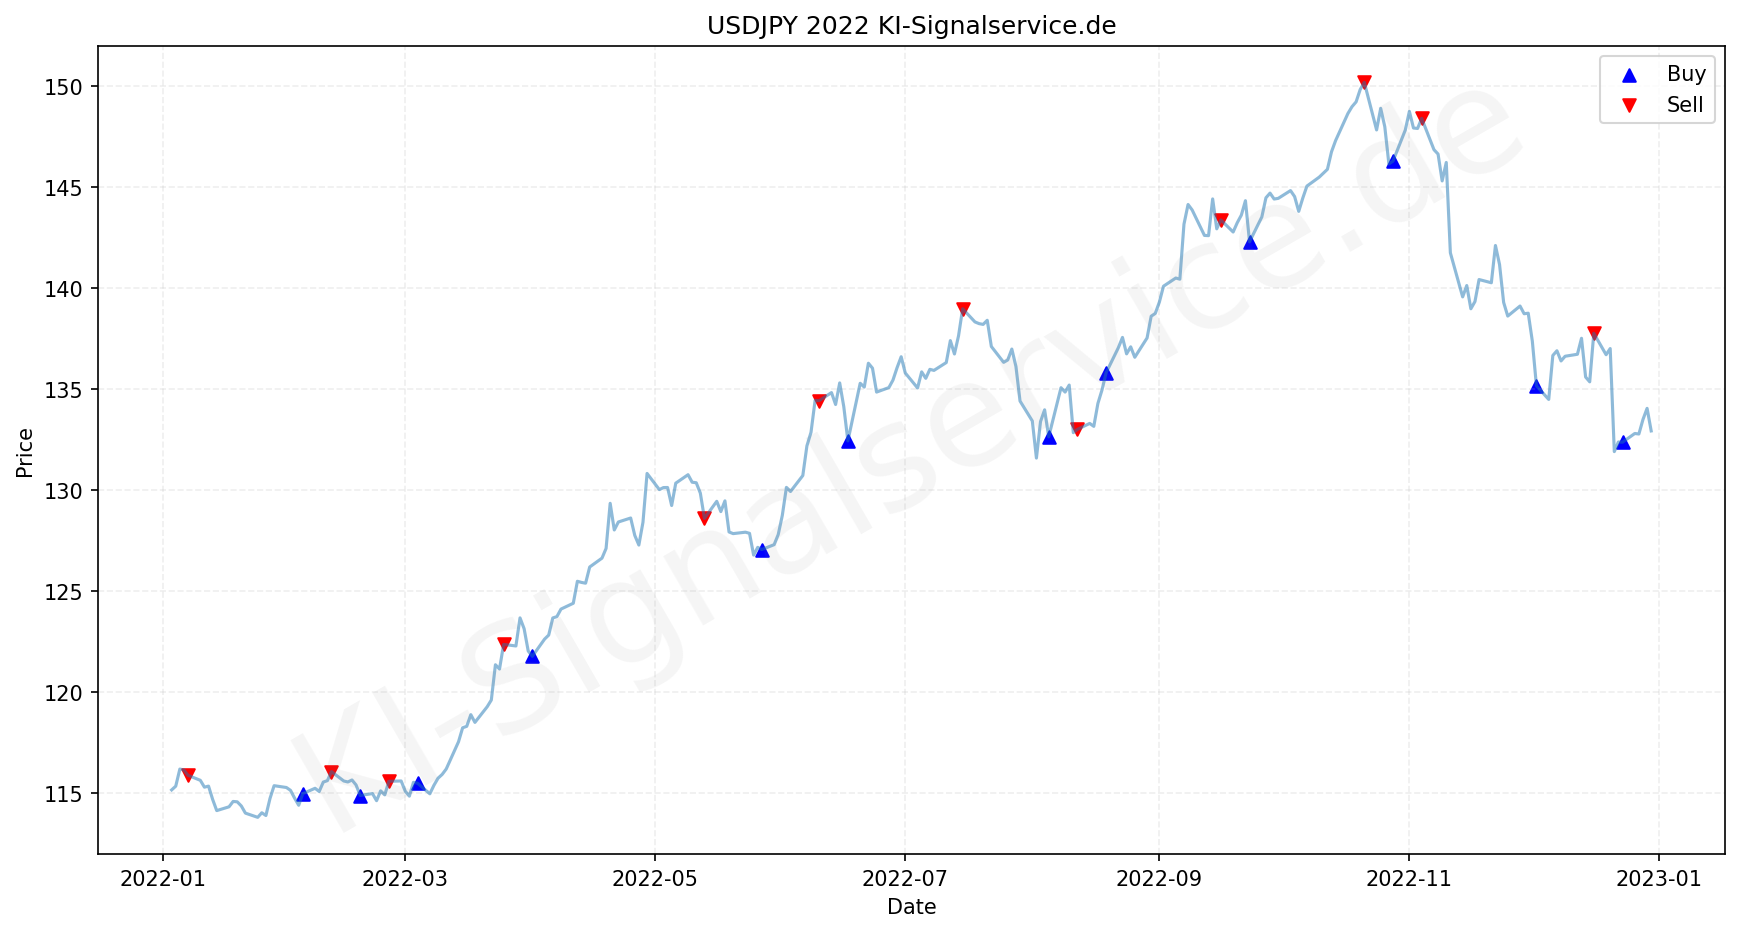 USDJPY Chart - KI Tradingsignale 2022